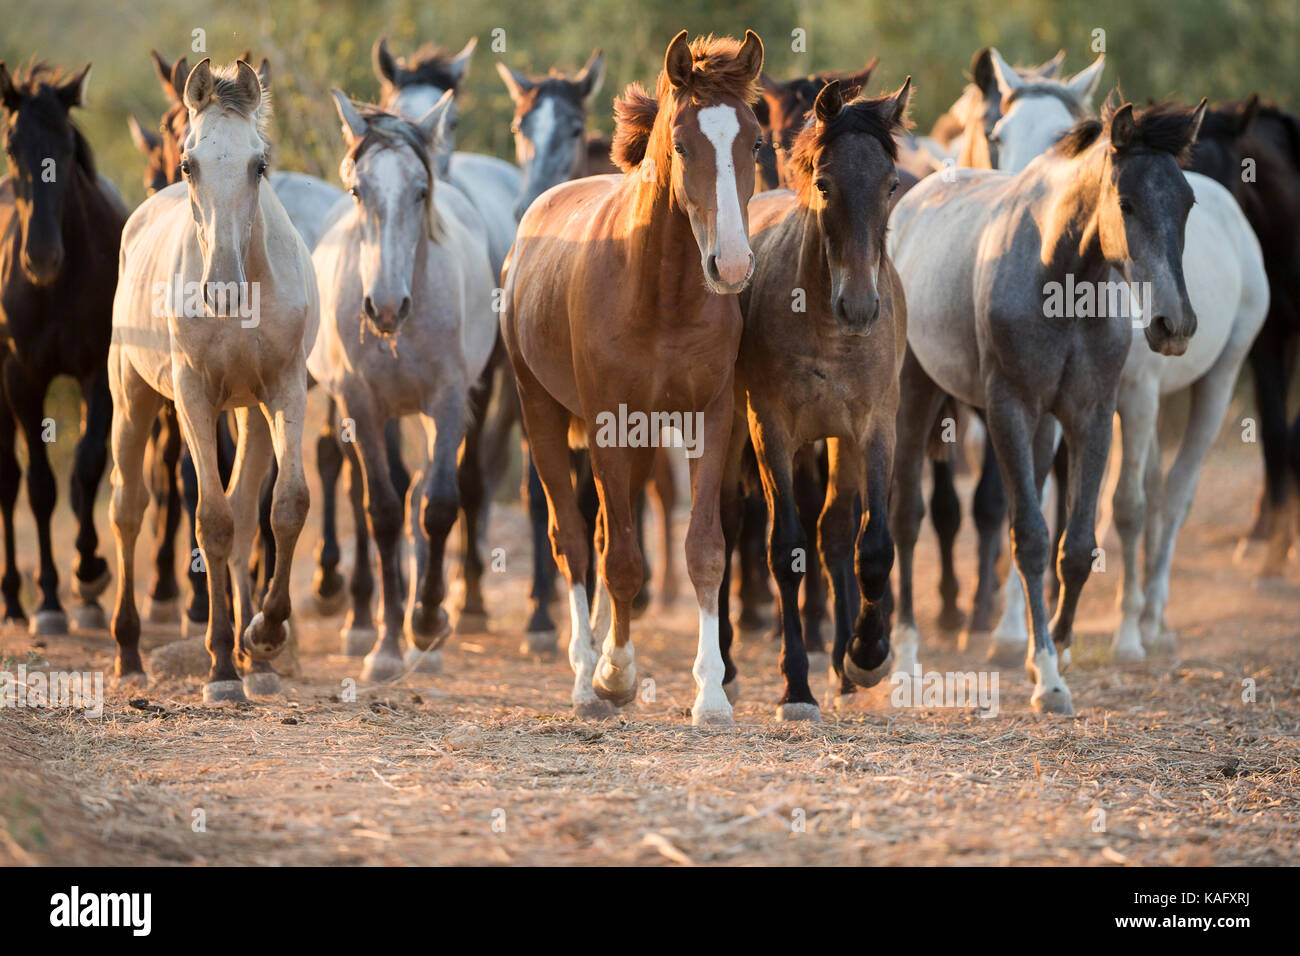 Cheval Espagnol pur, andalou. Troupeau de chevaux juvénile marche sur terrain sablonneux. Espagne Banque D'Images